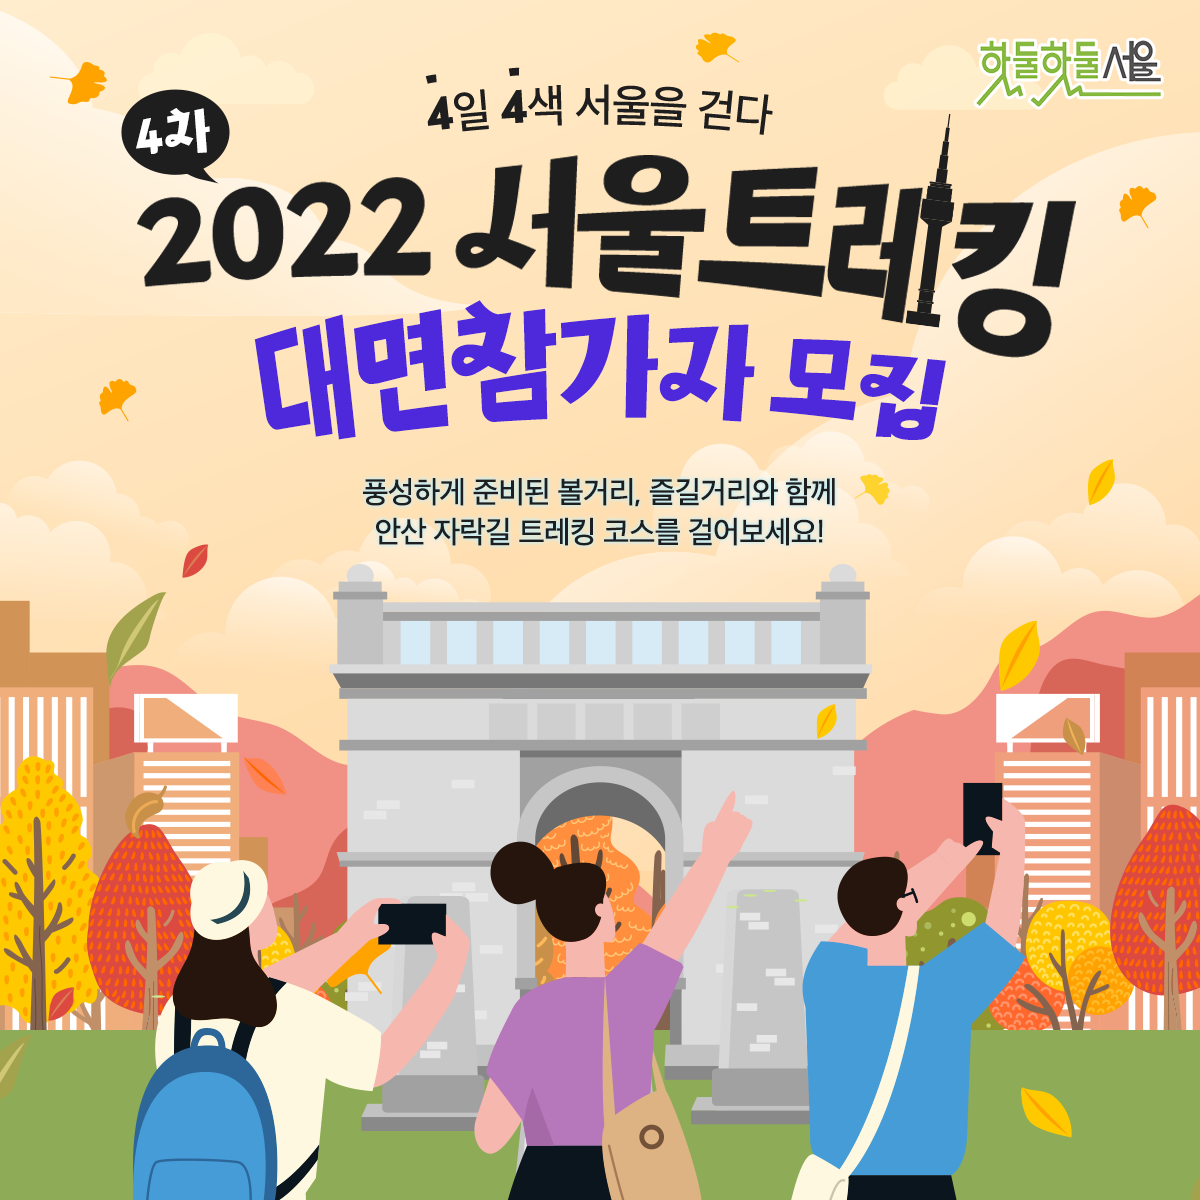 4일 4색 서울을 걷다 2022 서울트레킹 대면참가자 모집 풍성하게 준비된 볼거리, 즐길거리와 함께 안산 자락길 트레킹 코스를 걸어보세요!